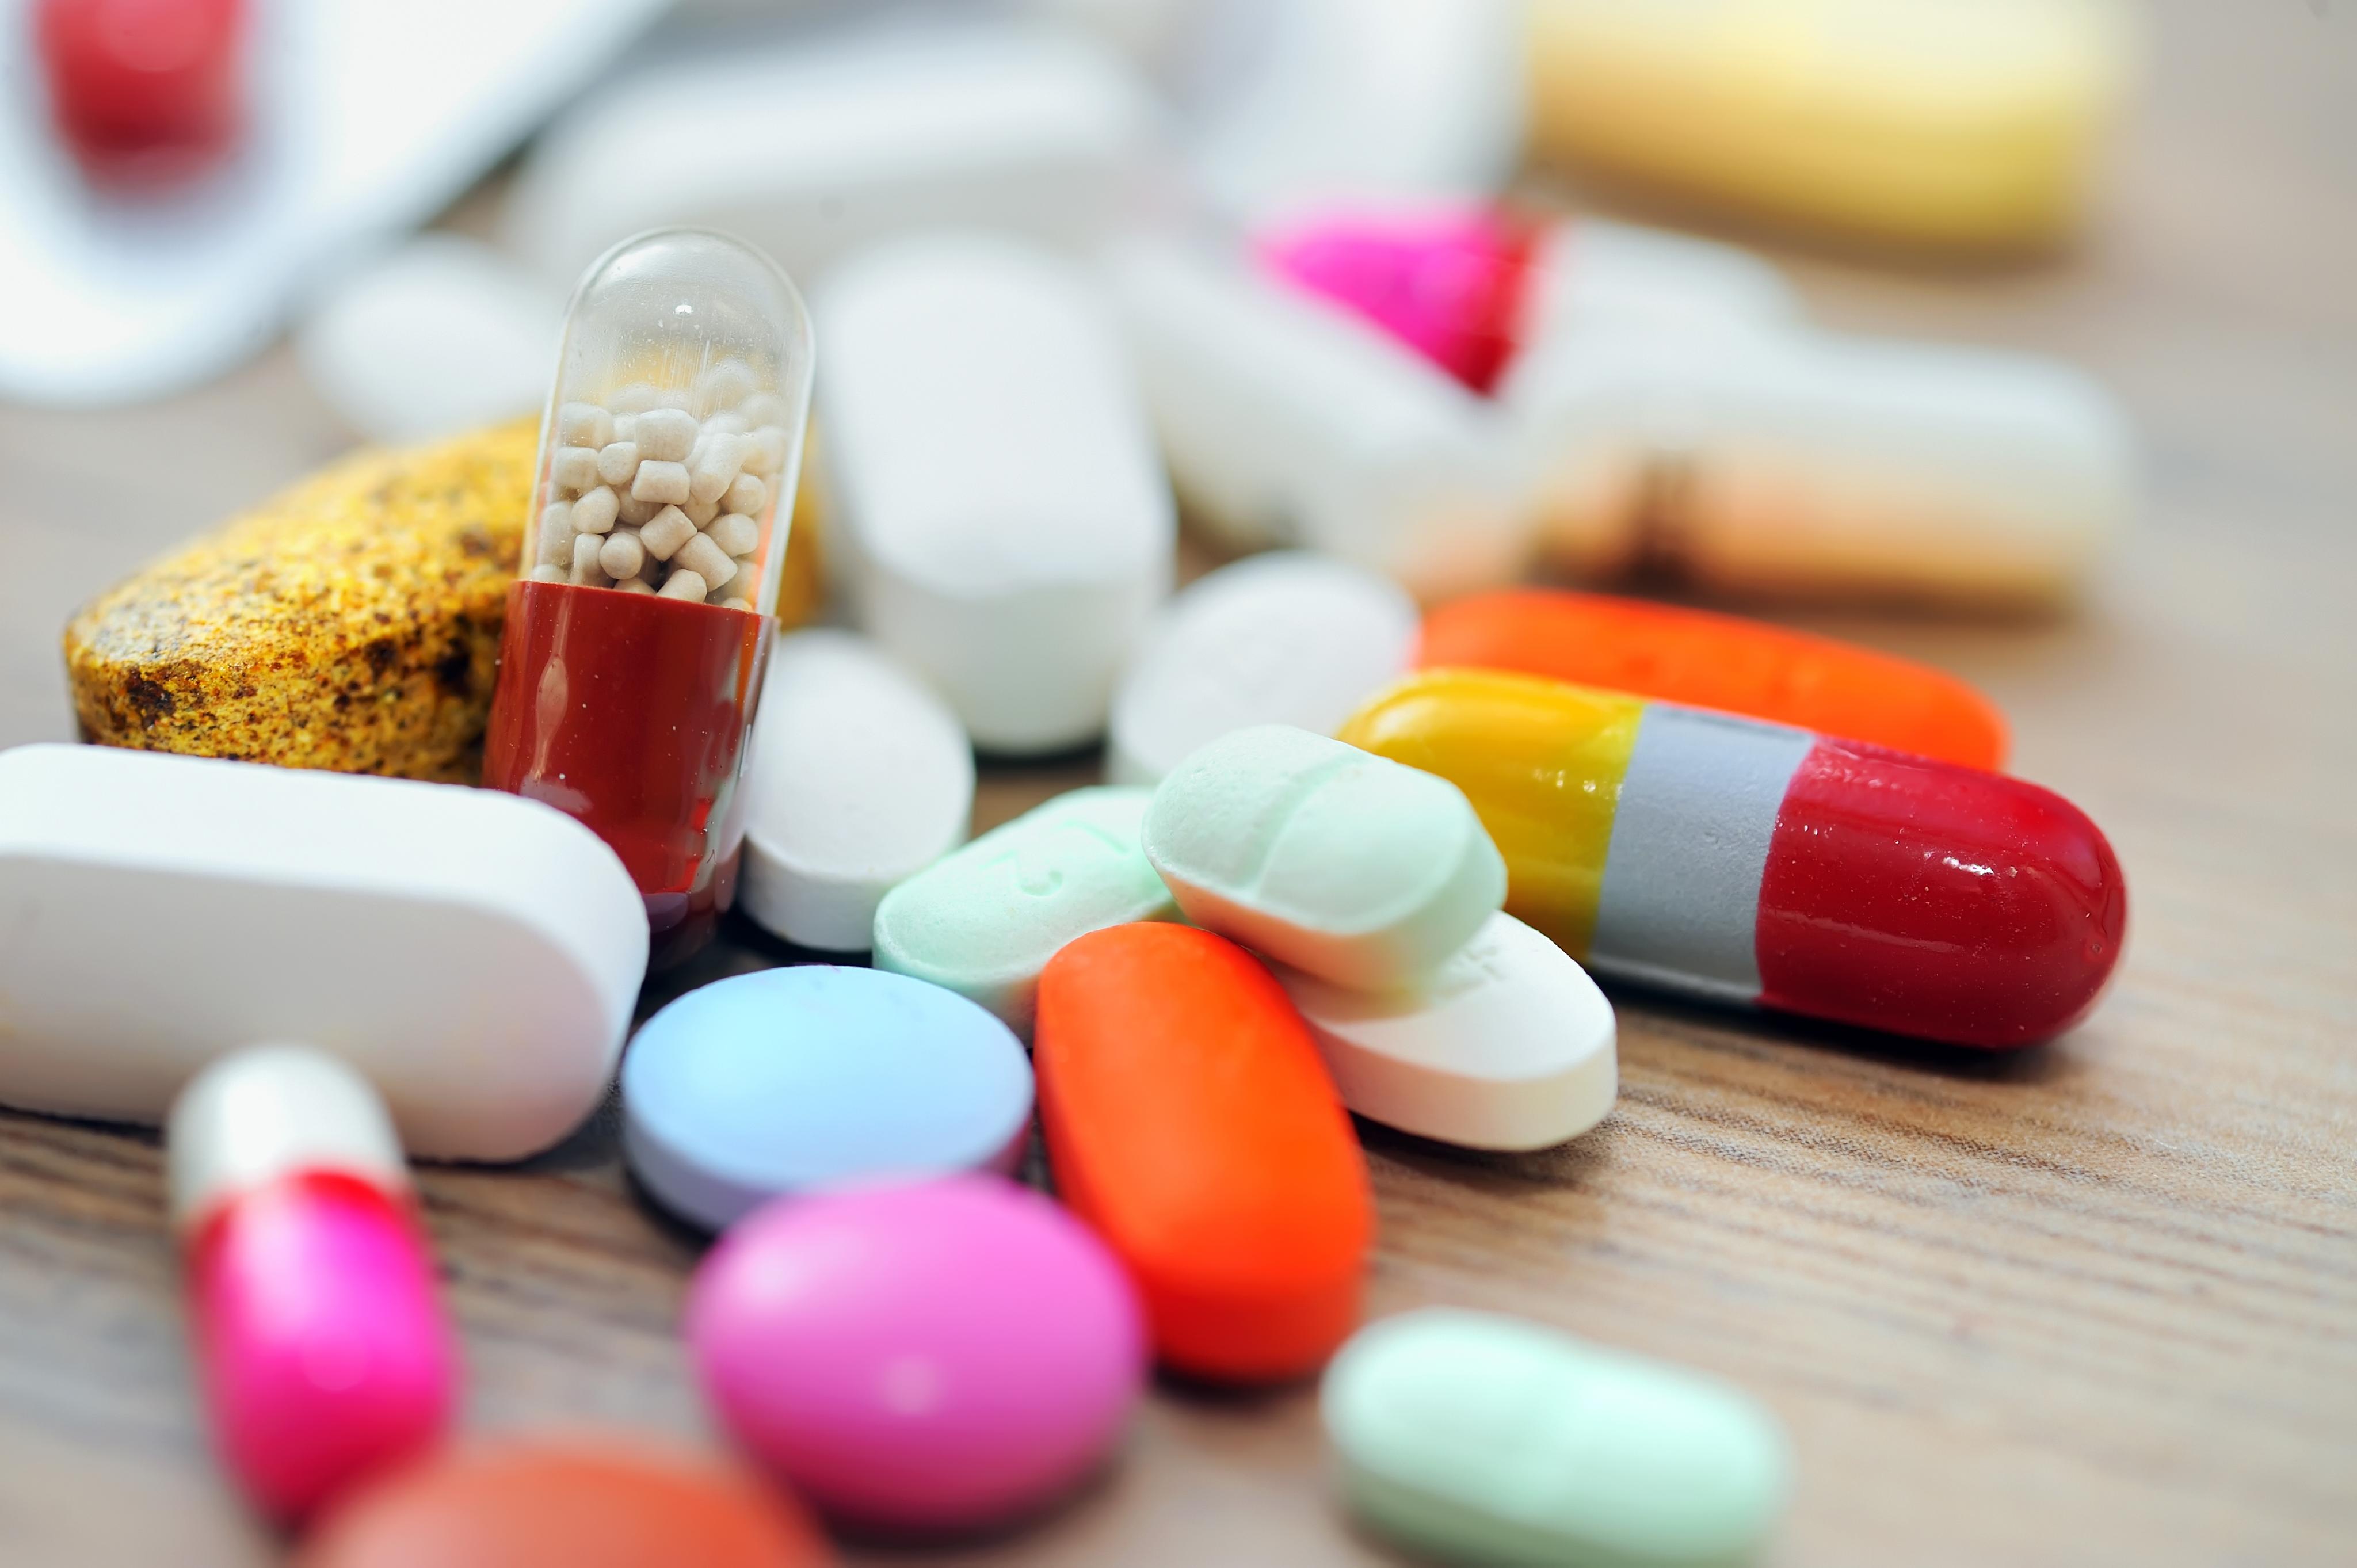 Un informe considera de “difícil aplicación” la nueva ley de dispensa de antibióticos en farmacias